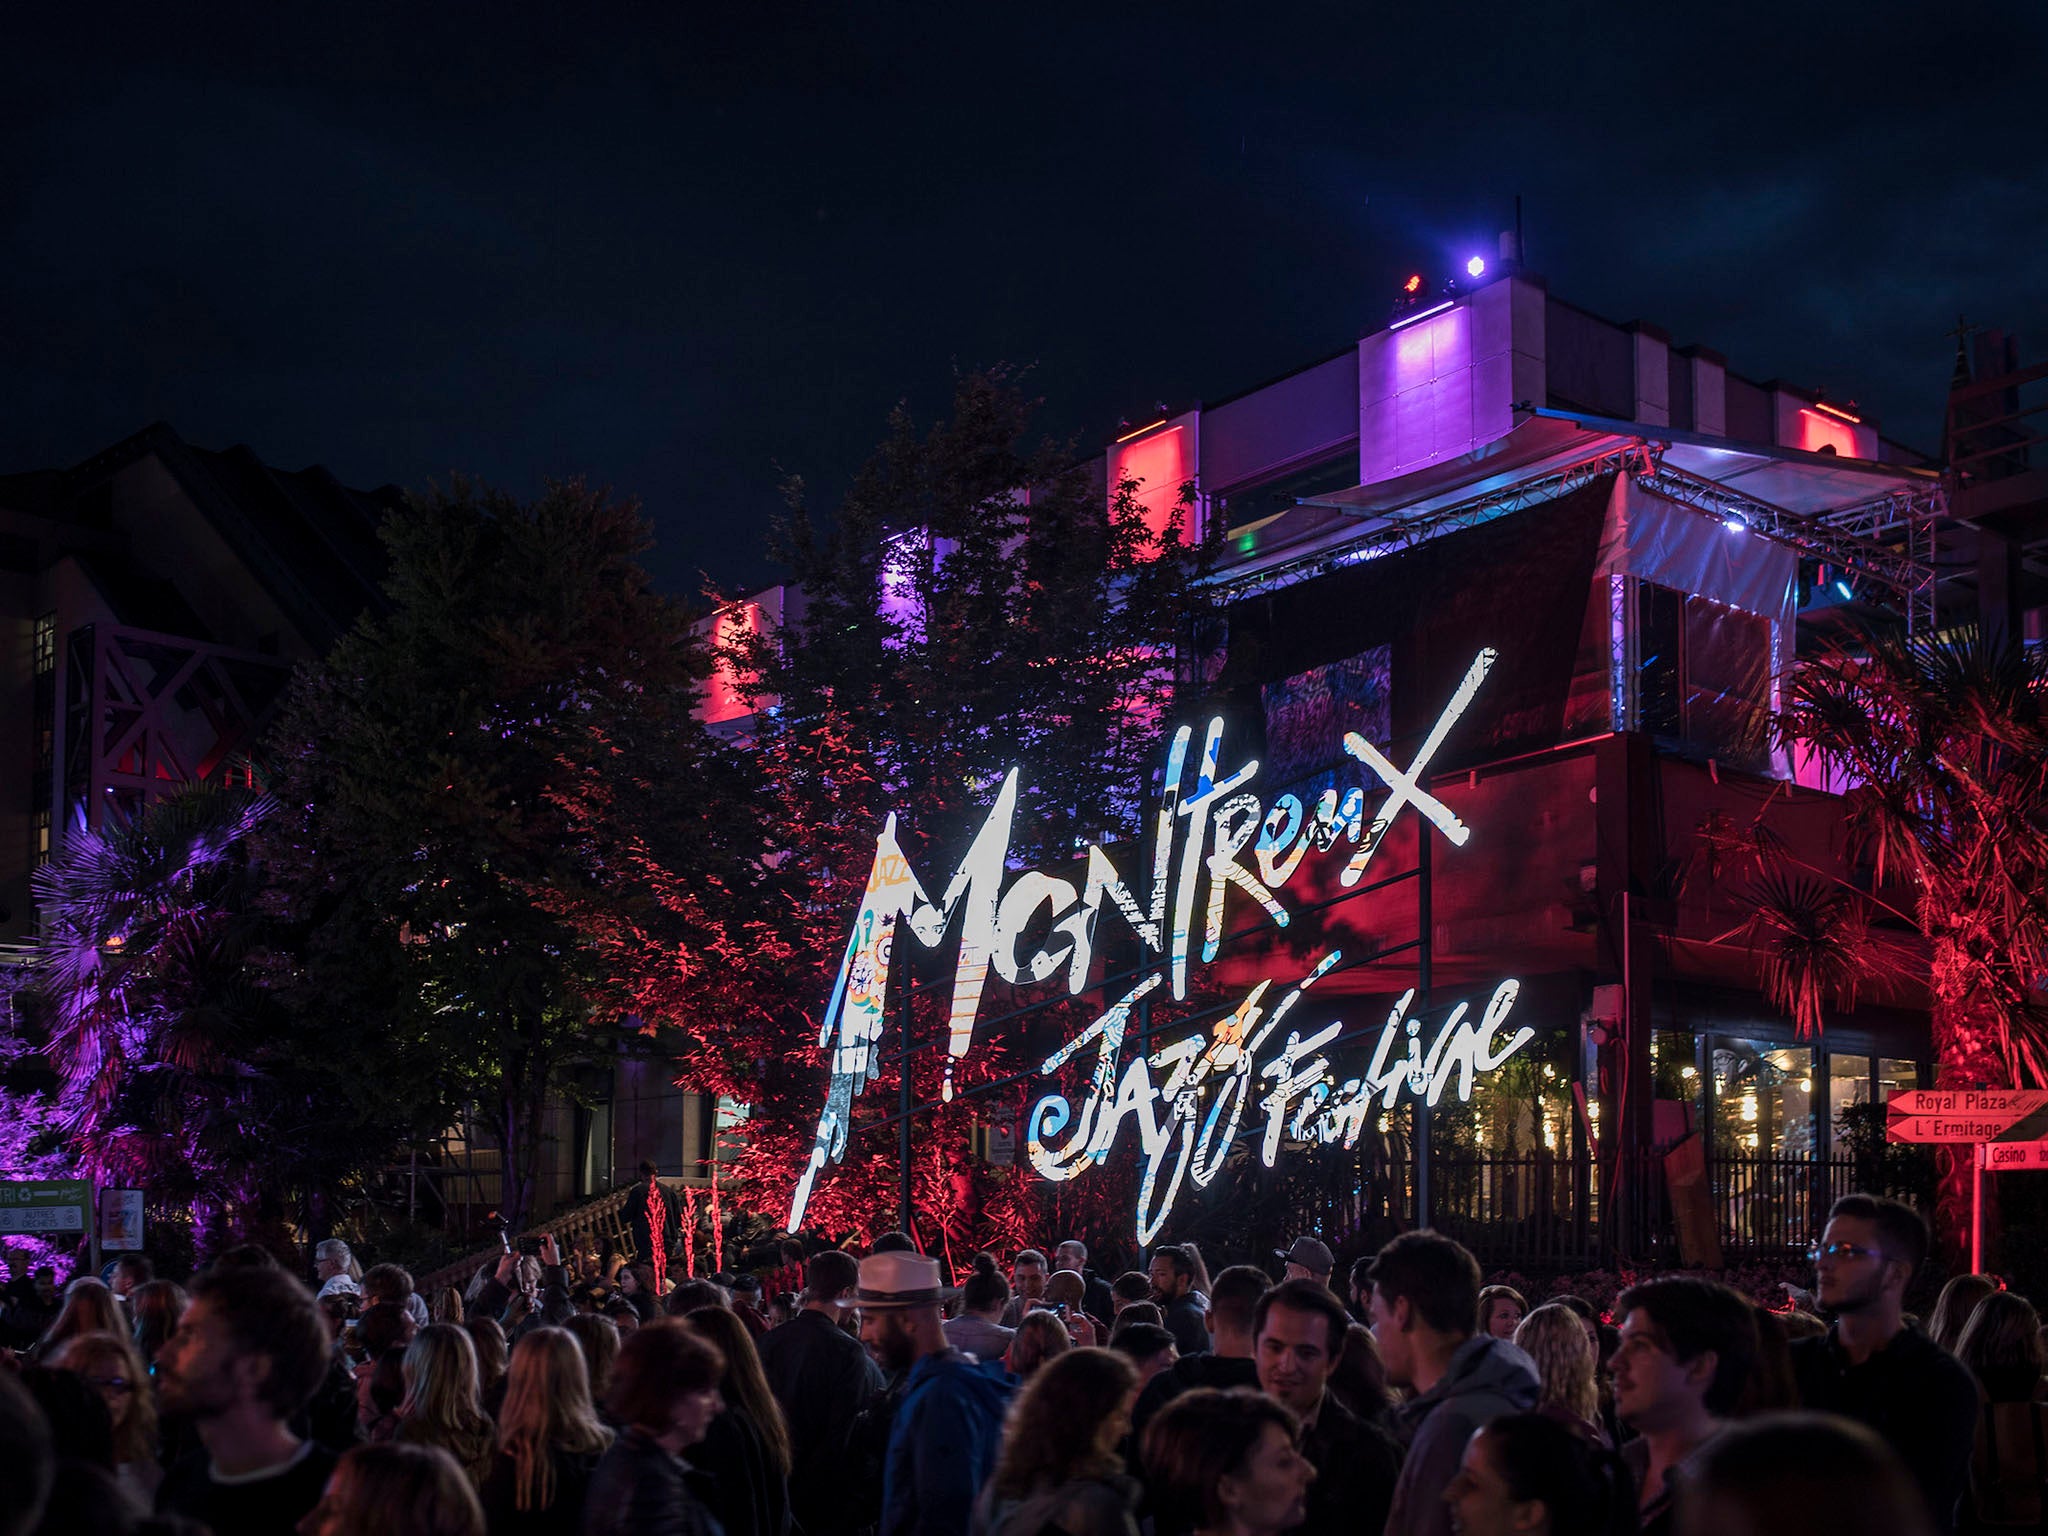 singles de montreux 2018 dates festival